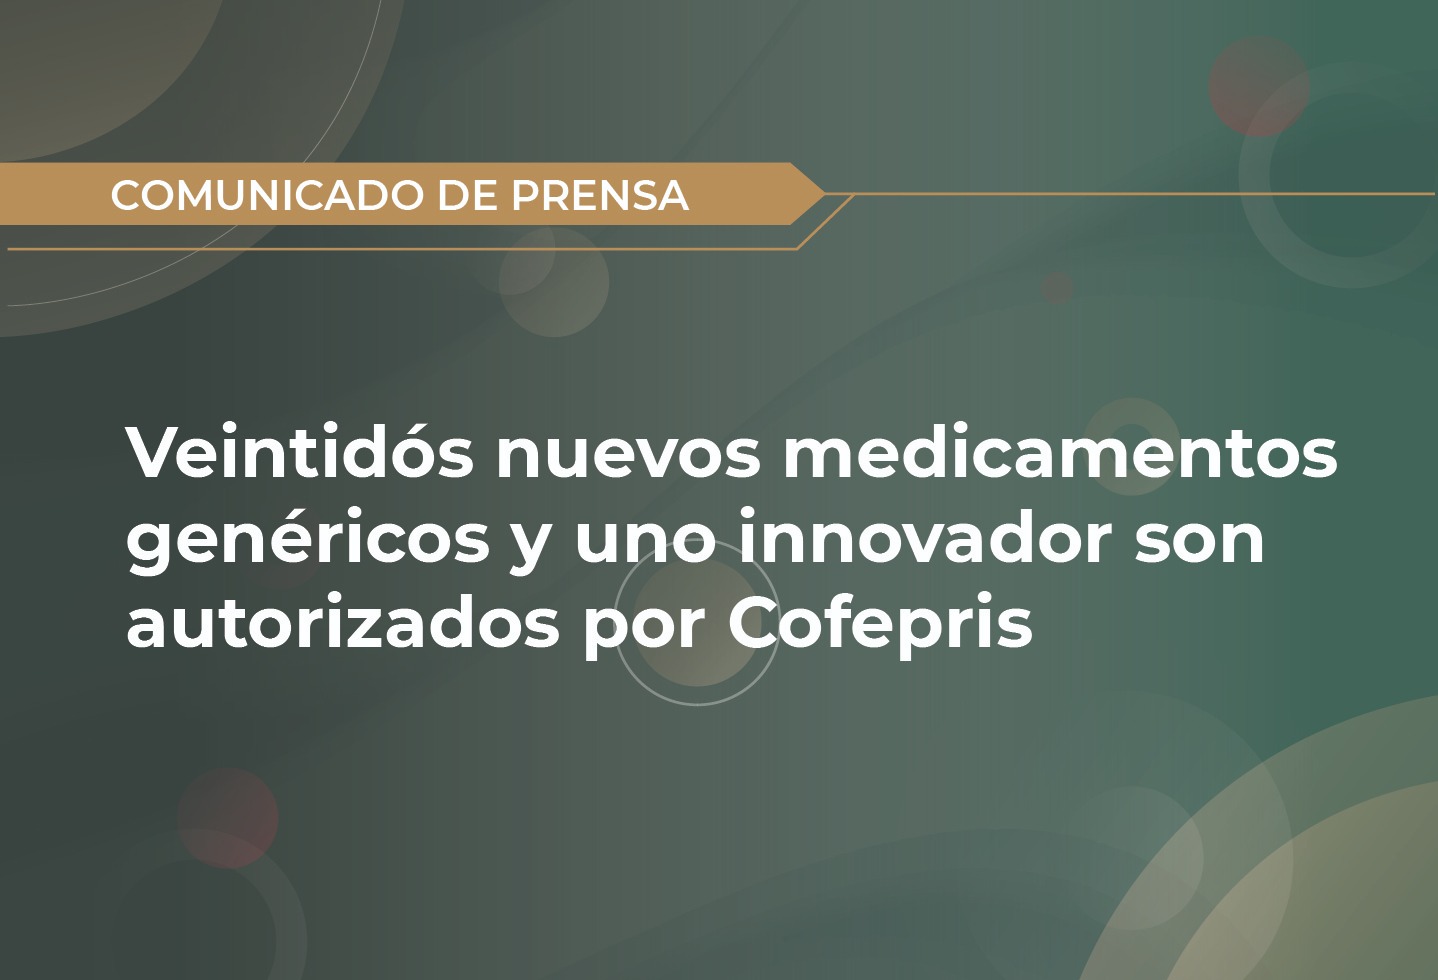 Veintidós nuevos medicamentos genéricos y uno innovador son autorizados por Cofepris